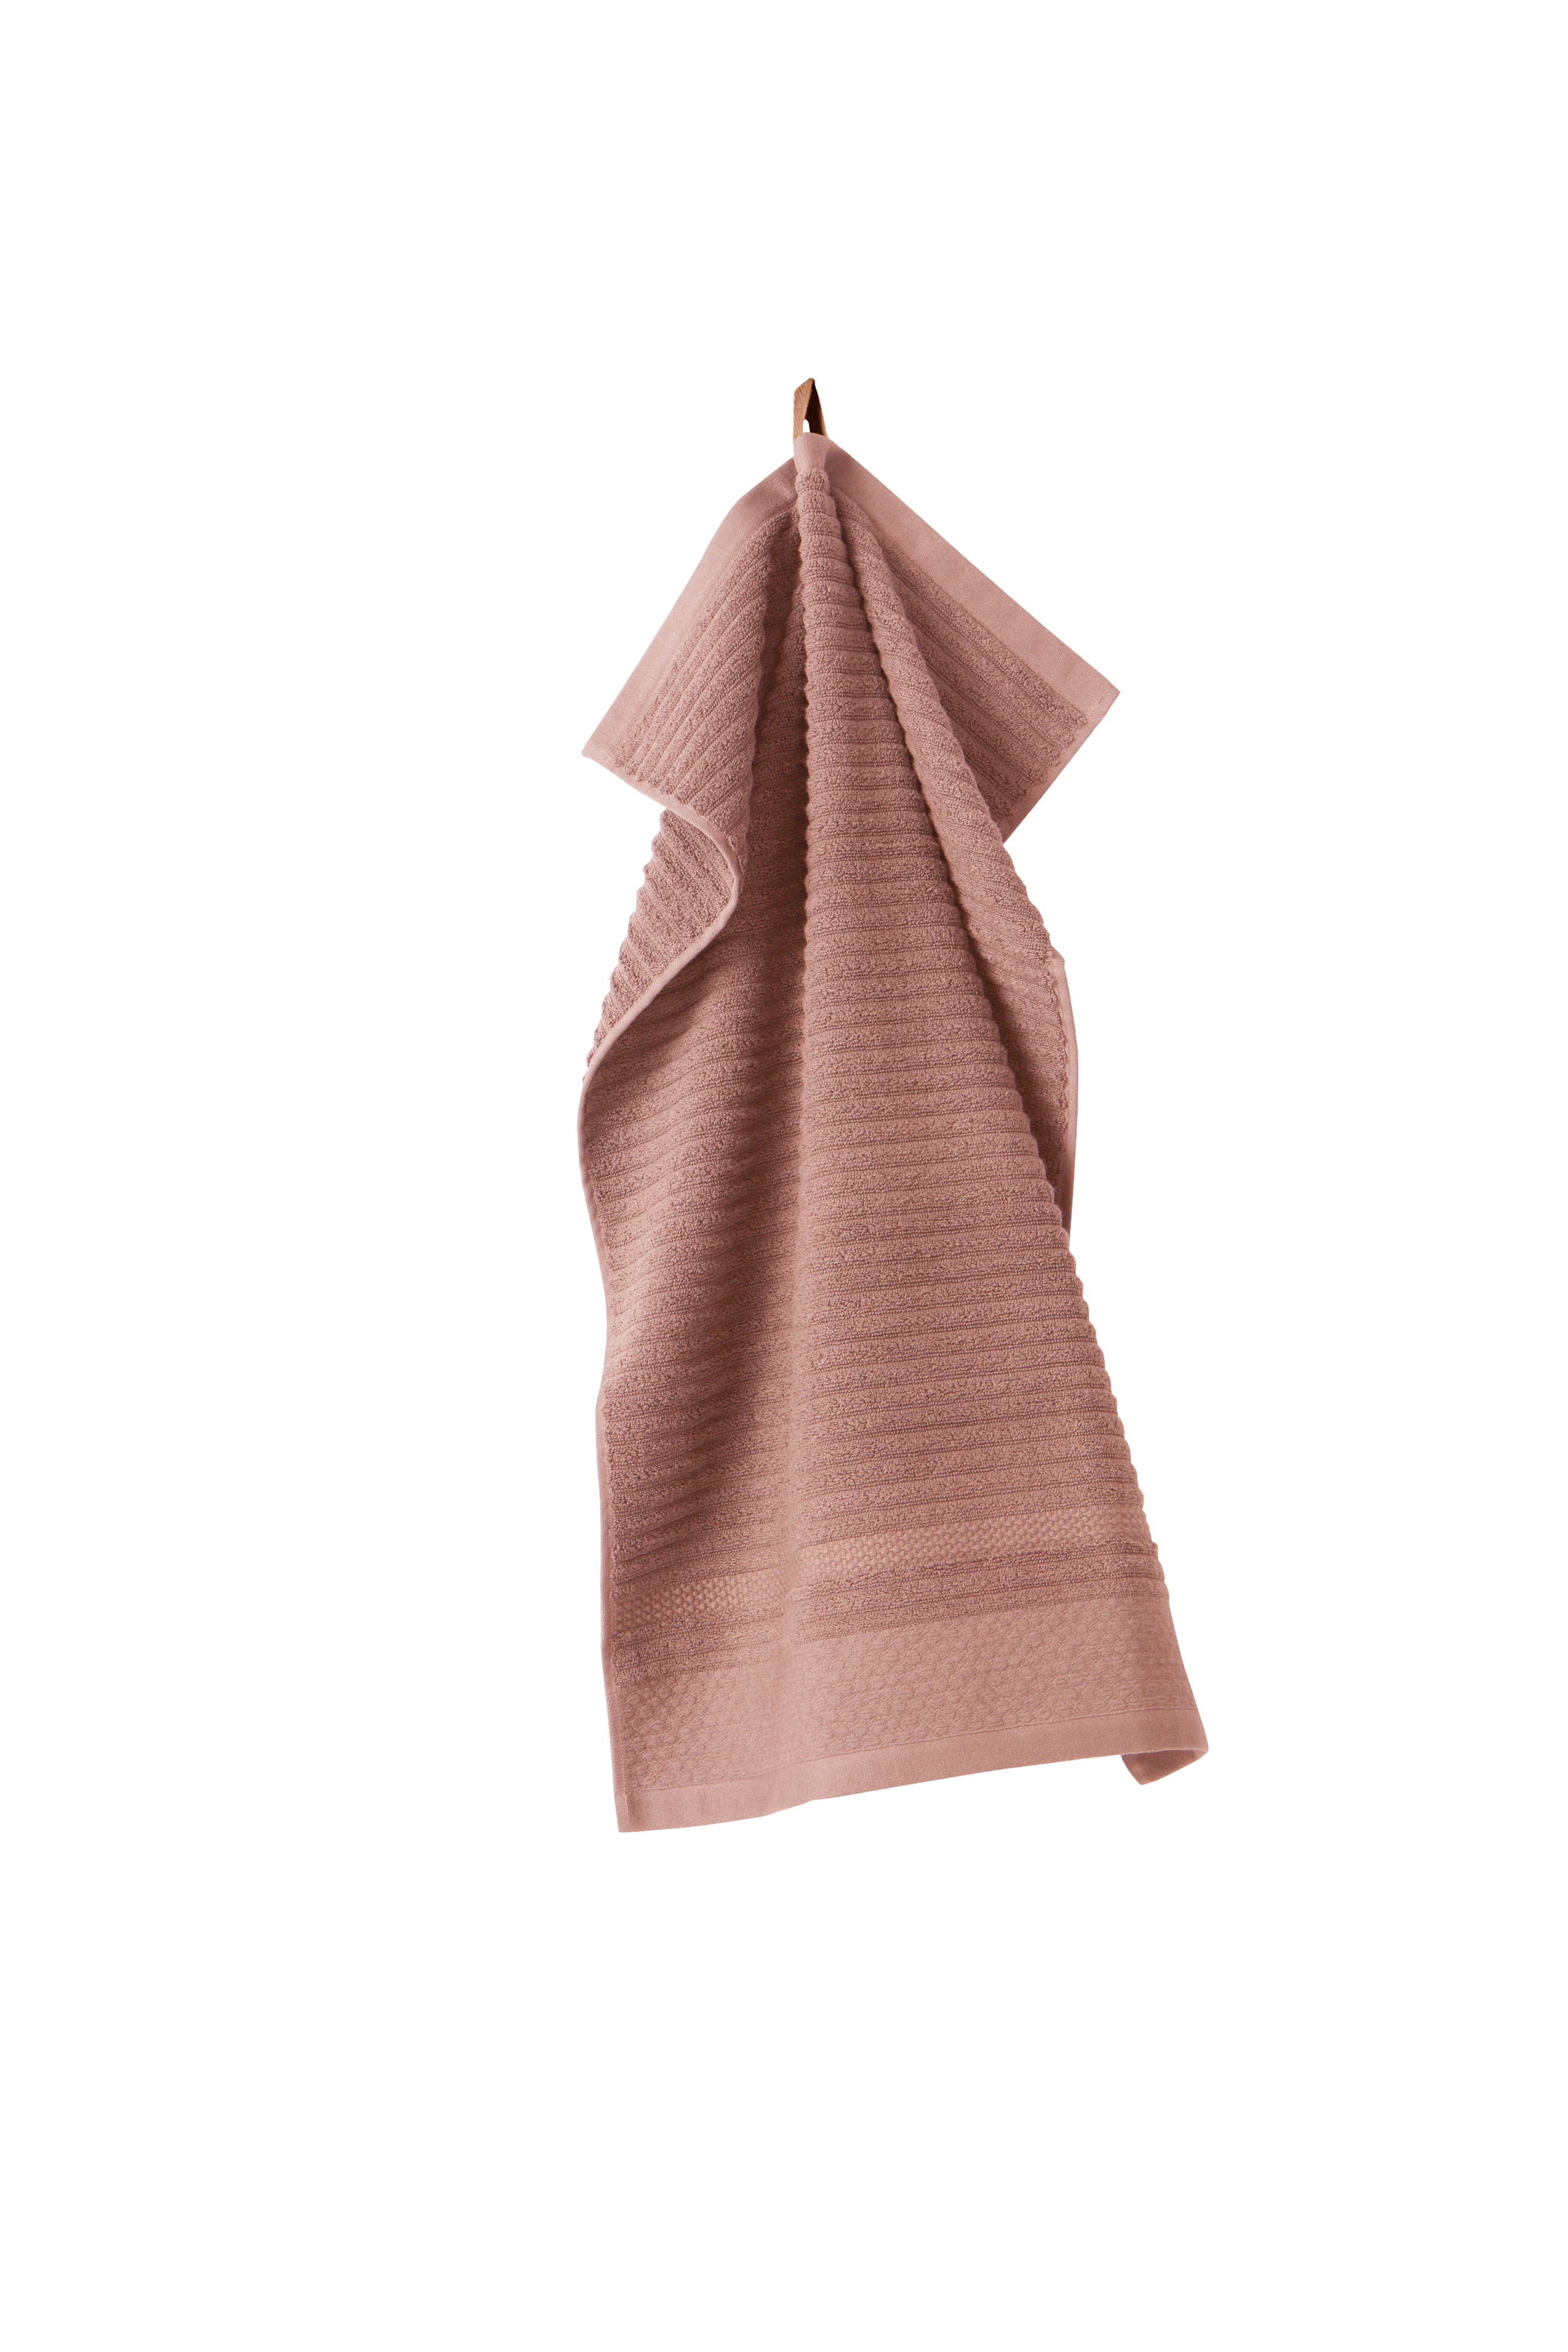 Nuchter schermutseling stropdas BETTIE handdoek - biologisch - Roze - Badtextiel | Jotex